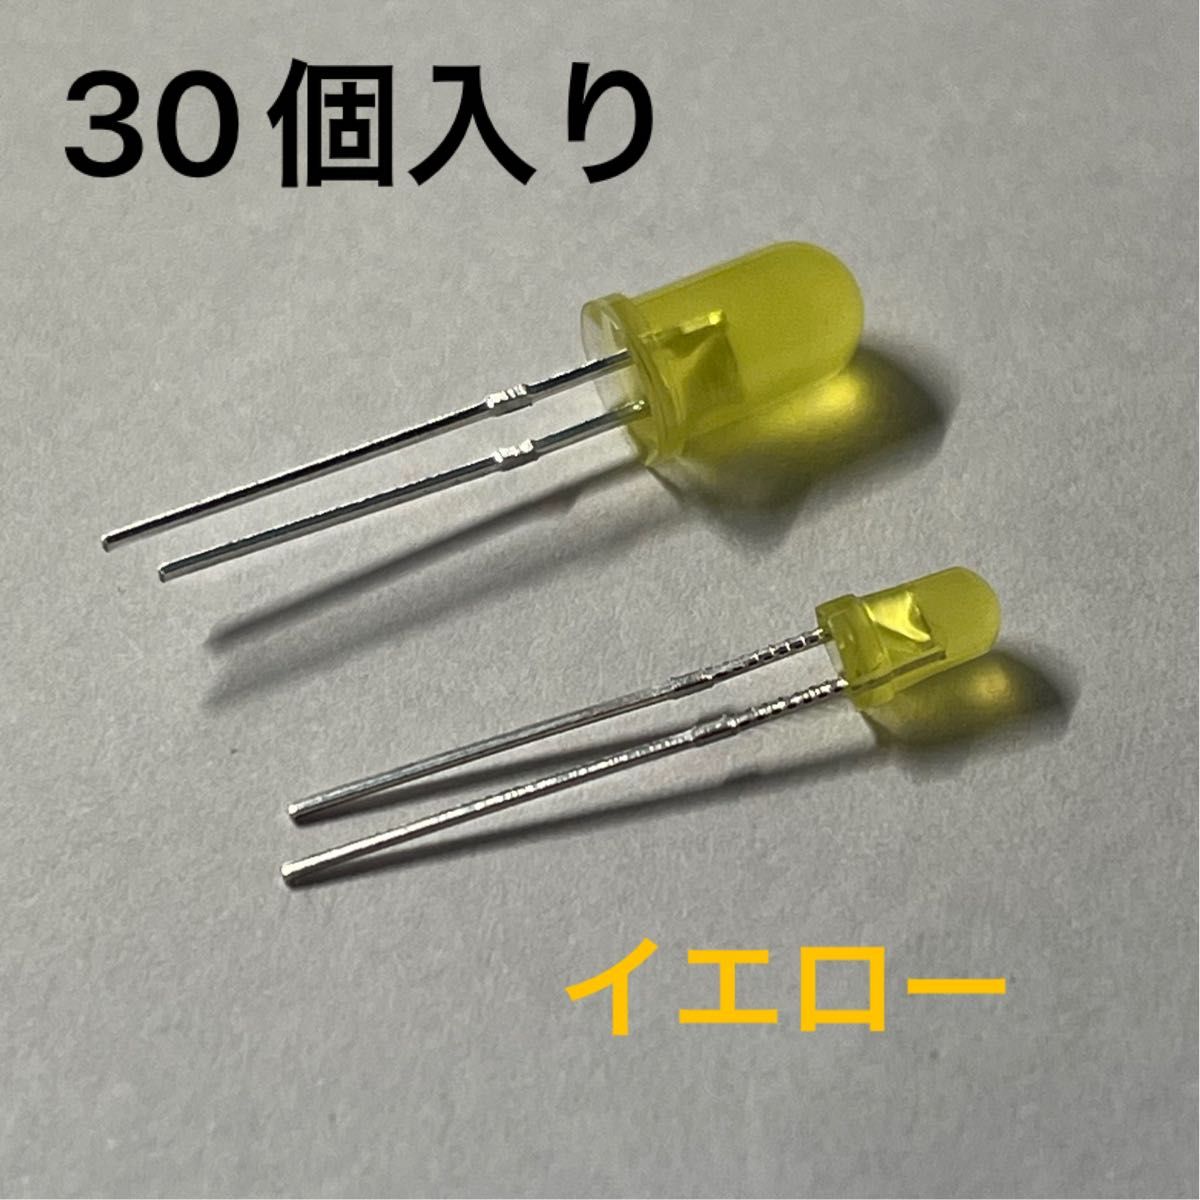 LED 30個入り (5mm x 15) (3mm x 15)